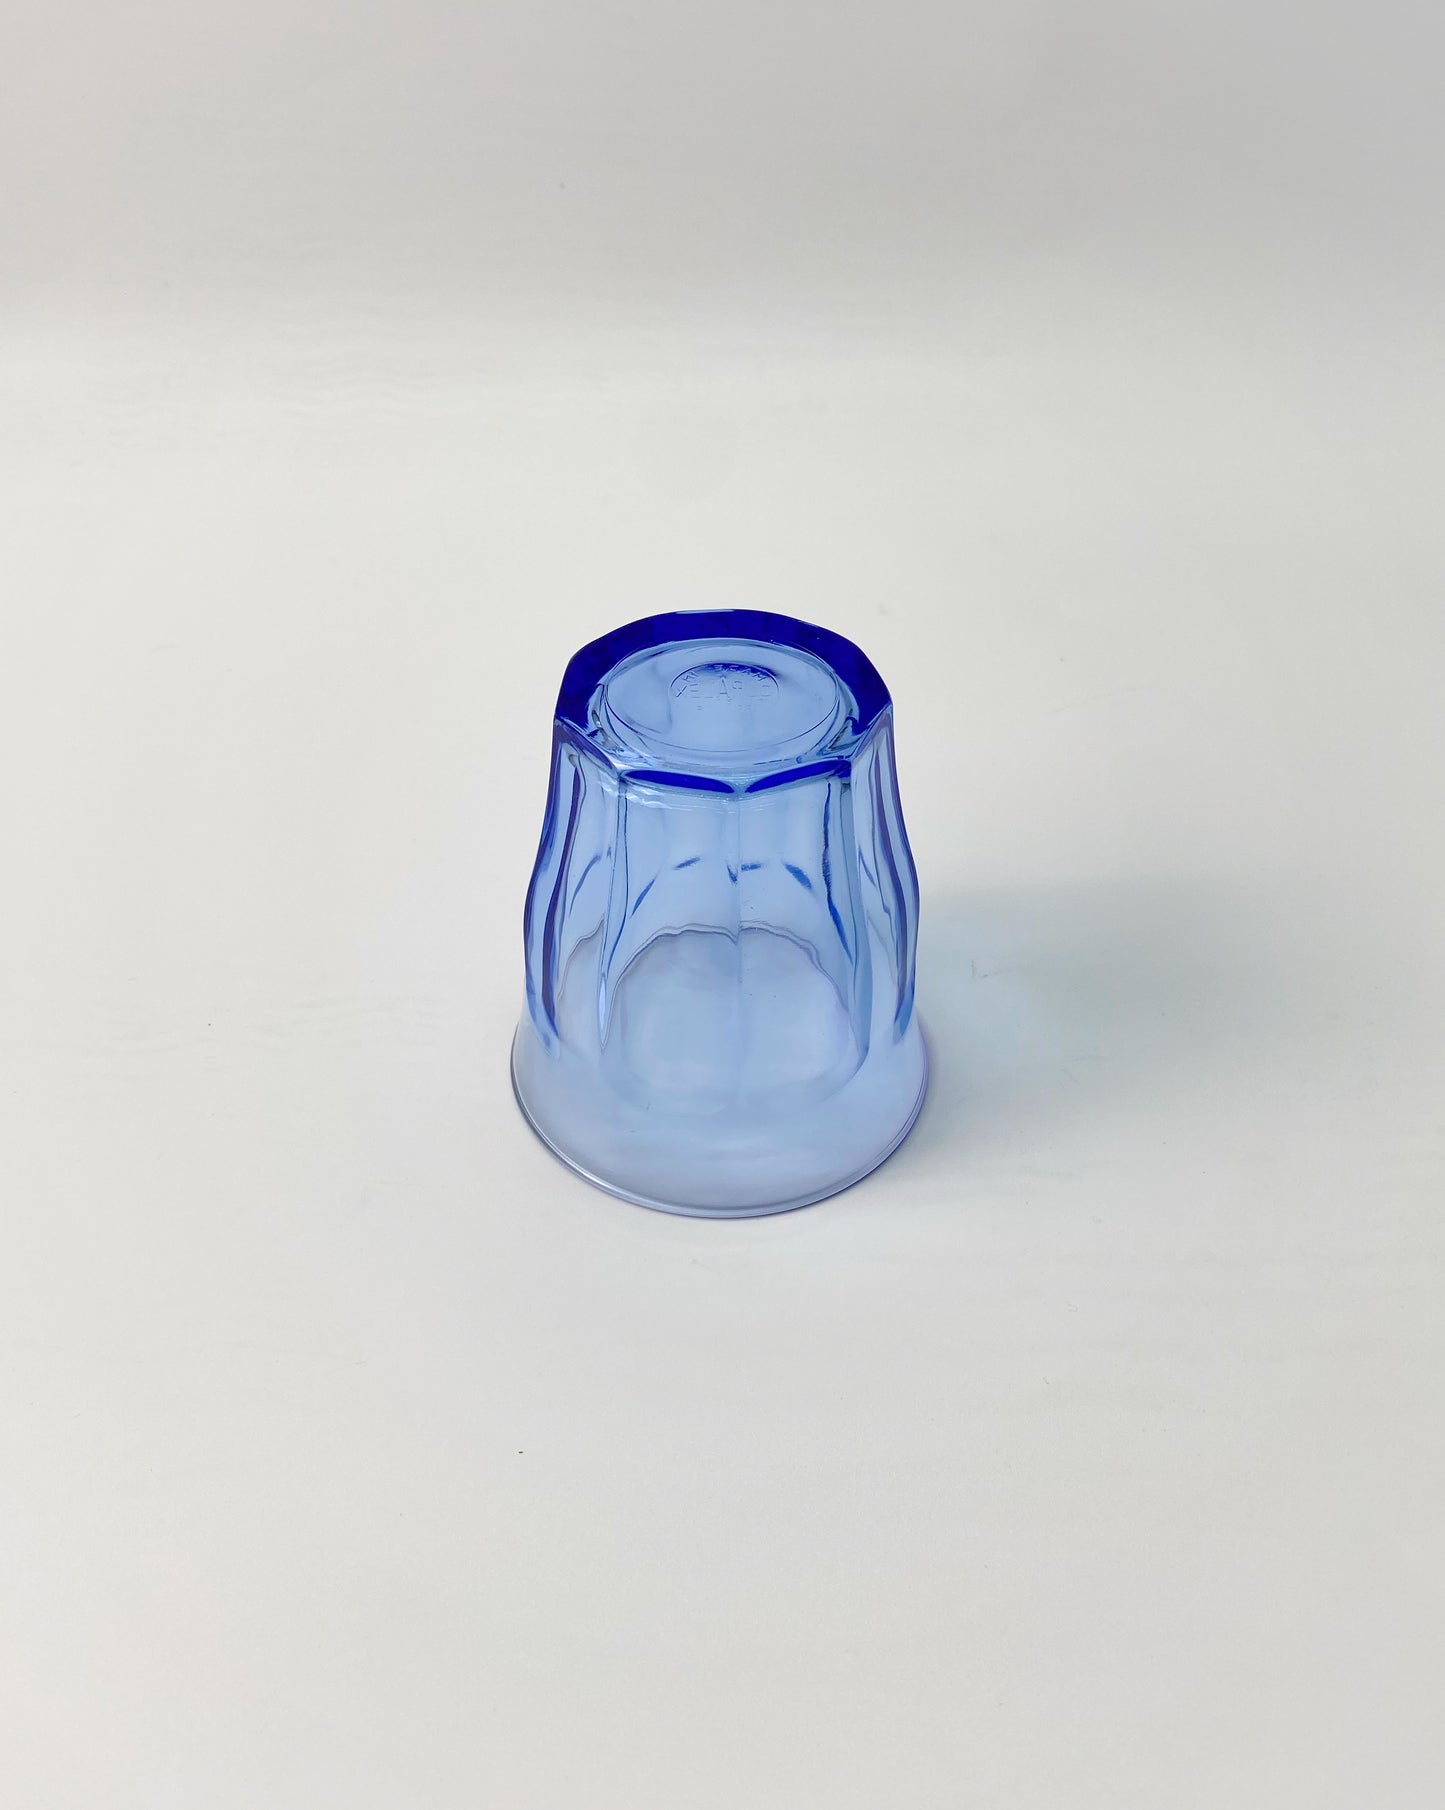 【法國製 Made in France】 Duralex 玻璃杯 (310ml) | Duralex Picardie Blue Tumbler (250ml)